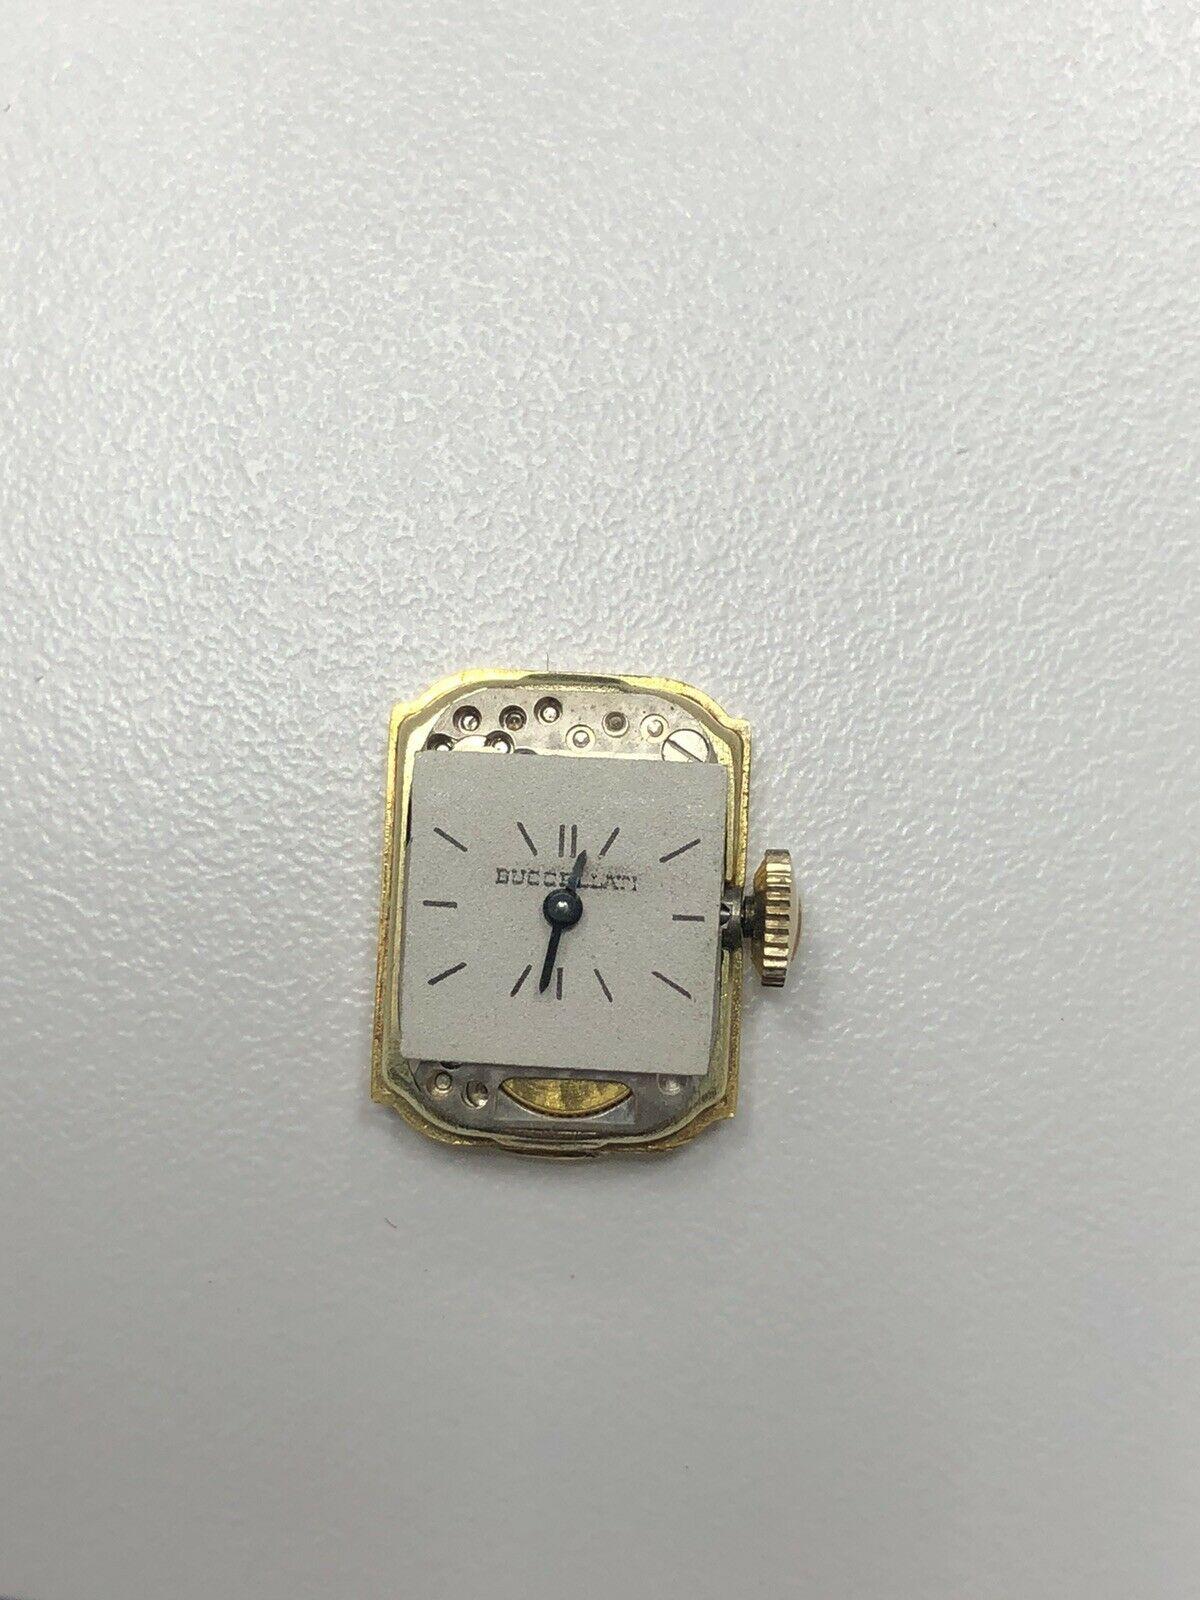 Mario Buccellati 14k Solid Gold And White Diamond Watch 

Fits 6-6.5 Inch wrist

40.3 Grams 

14mm Wide 

26 Round White Brilliant Cut Diamonds 

Color: E

Clarity: VS